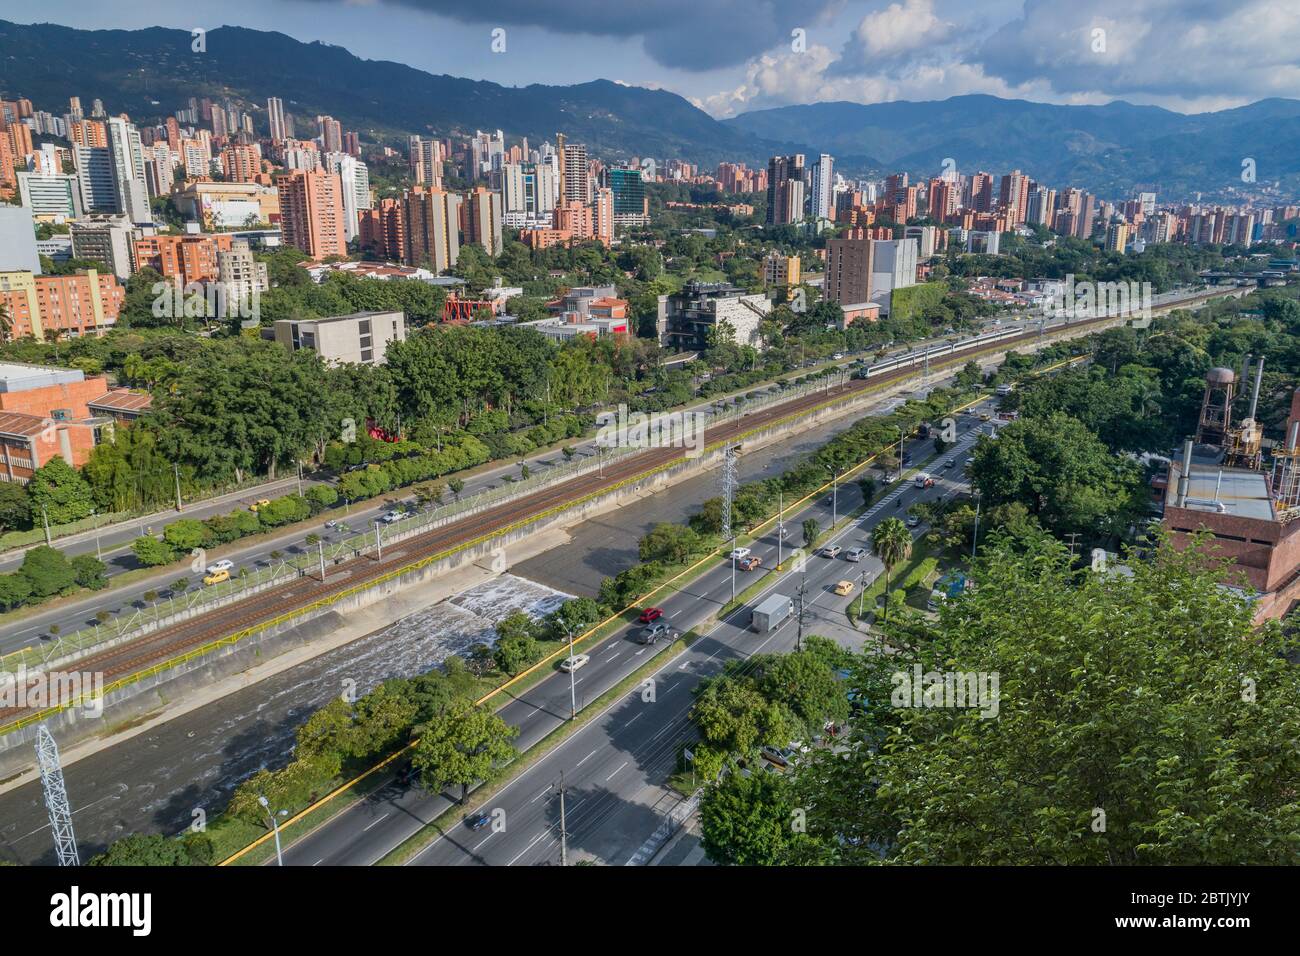 Vue aérienne du secteur d'El Poblado à Medellin, l'un des secteurs les plus peuplés de cette ville touristique importante de Colombie Banque D'Images